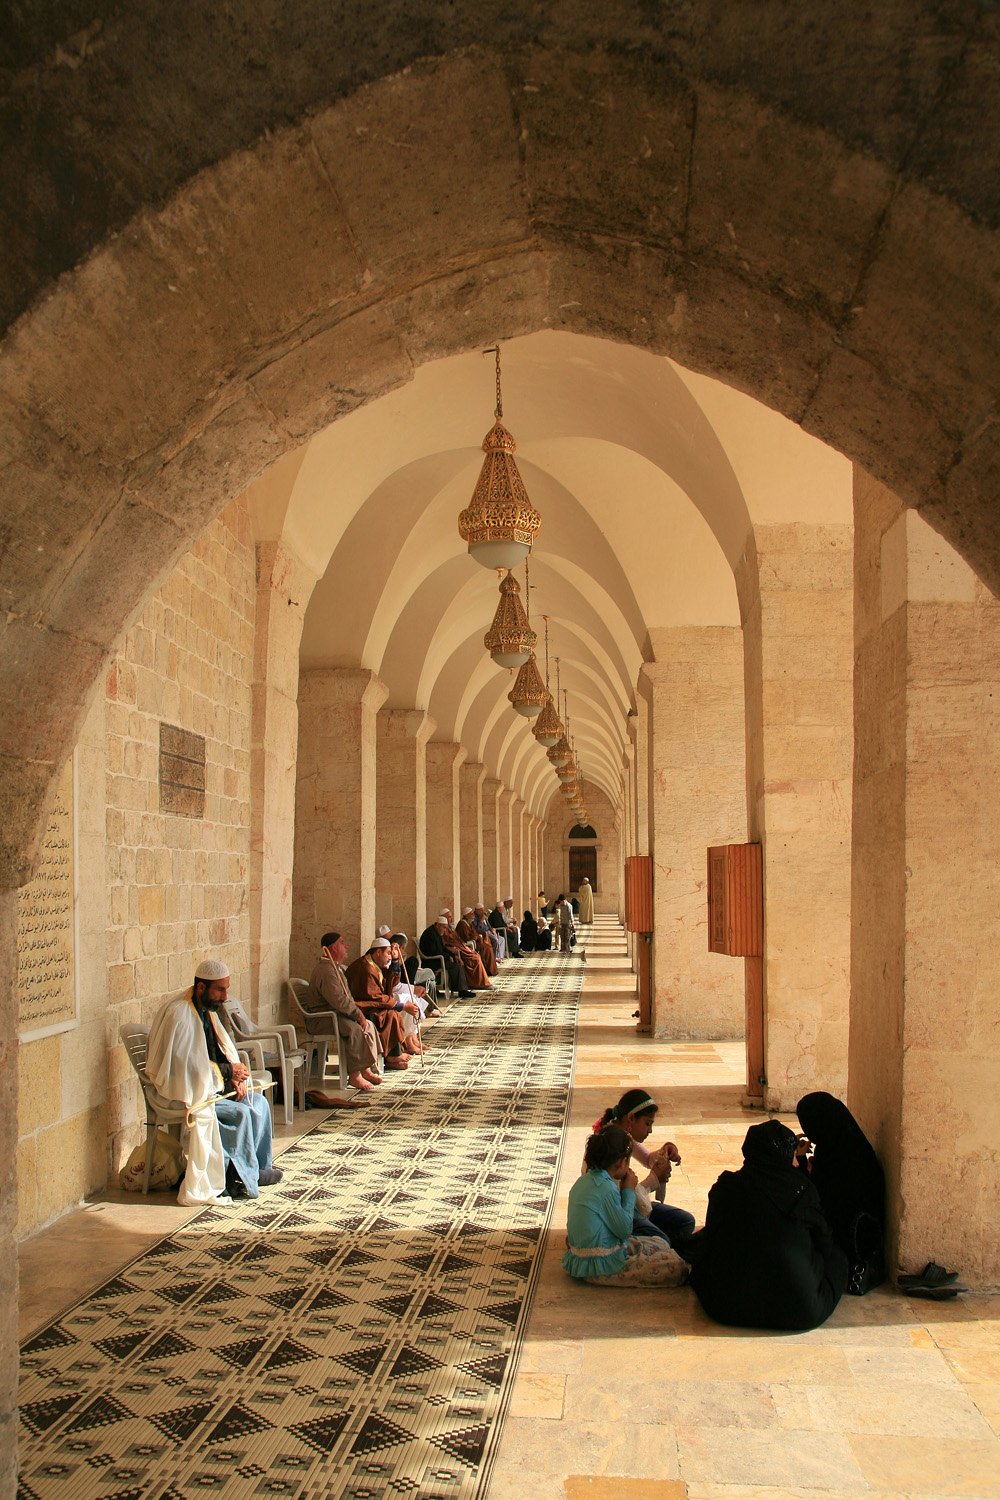 bill-hocker-courtyard-arcade-umayyad-mosque-aleppo-syria-2008